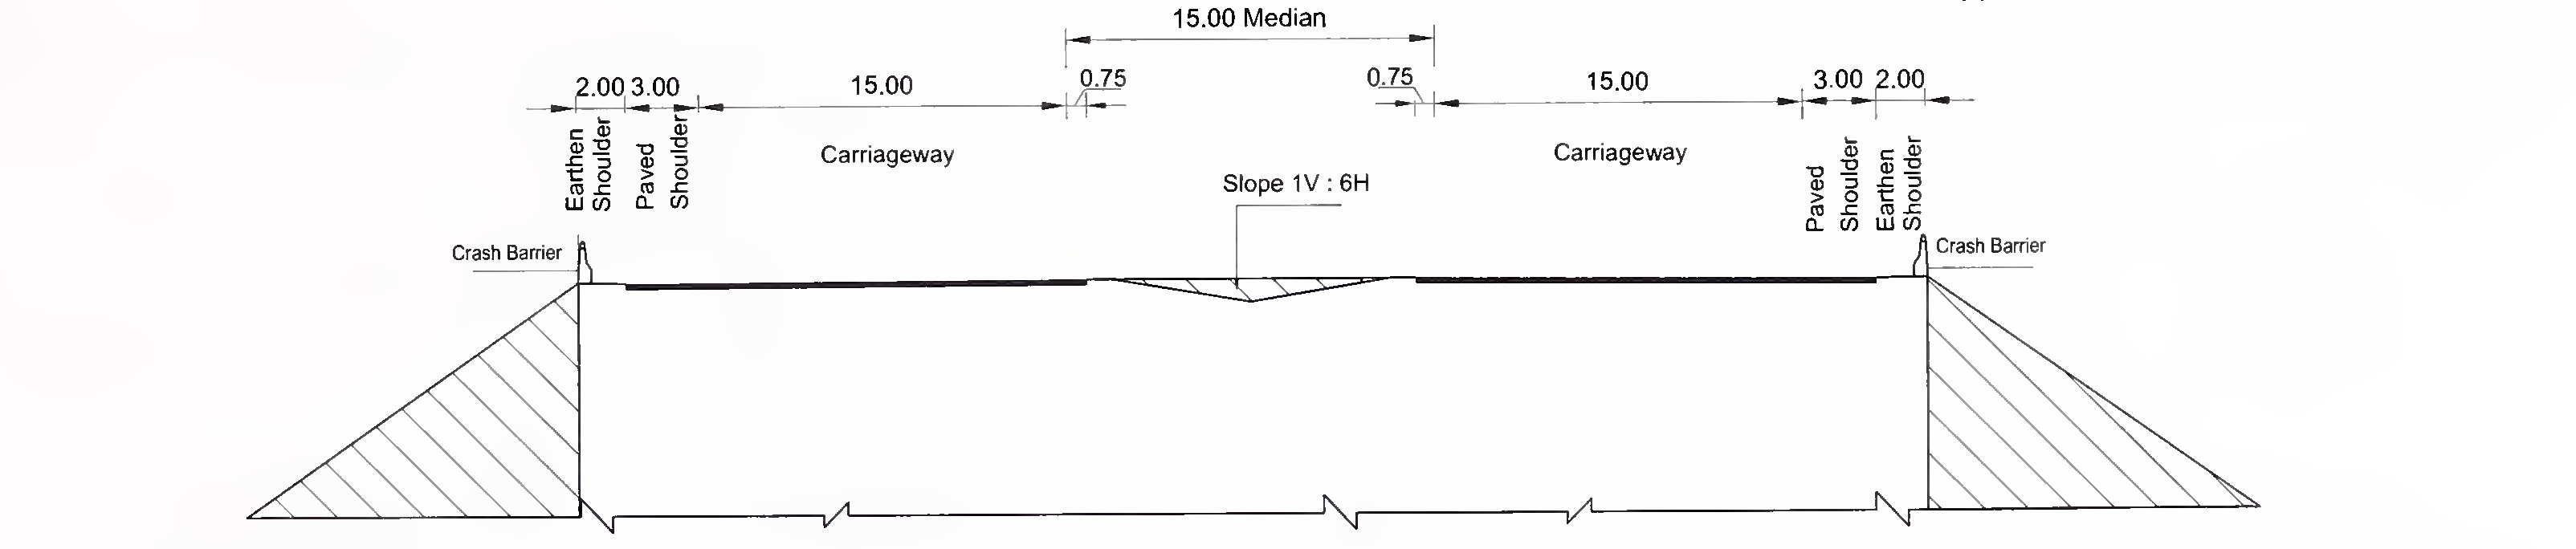 ફિગ .6.3 (સી) 8-લેન (2 × 4) માટે ડિપ્રેસનવાળા મેડિયનવાળા એક્સપ્રેસ વે માટે સ્લેબ અને બ Typeક્સ ટાઇપ કલ્વરટનો લાક્ષણિક ક્રોસ-સેક્શન